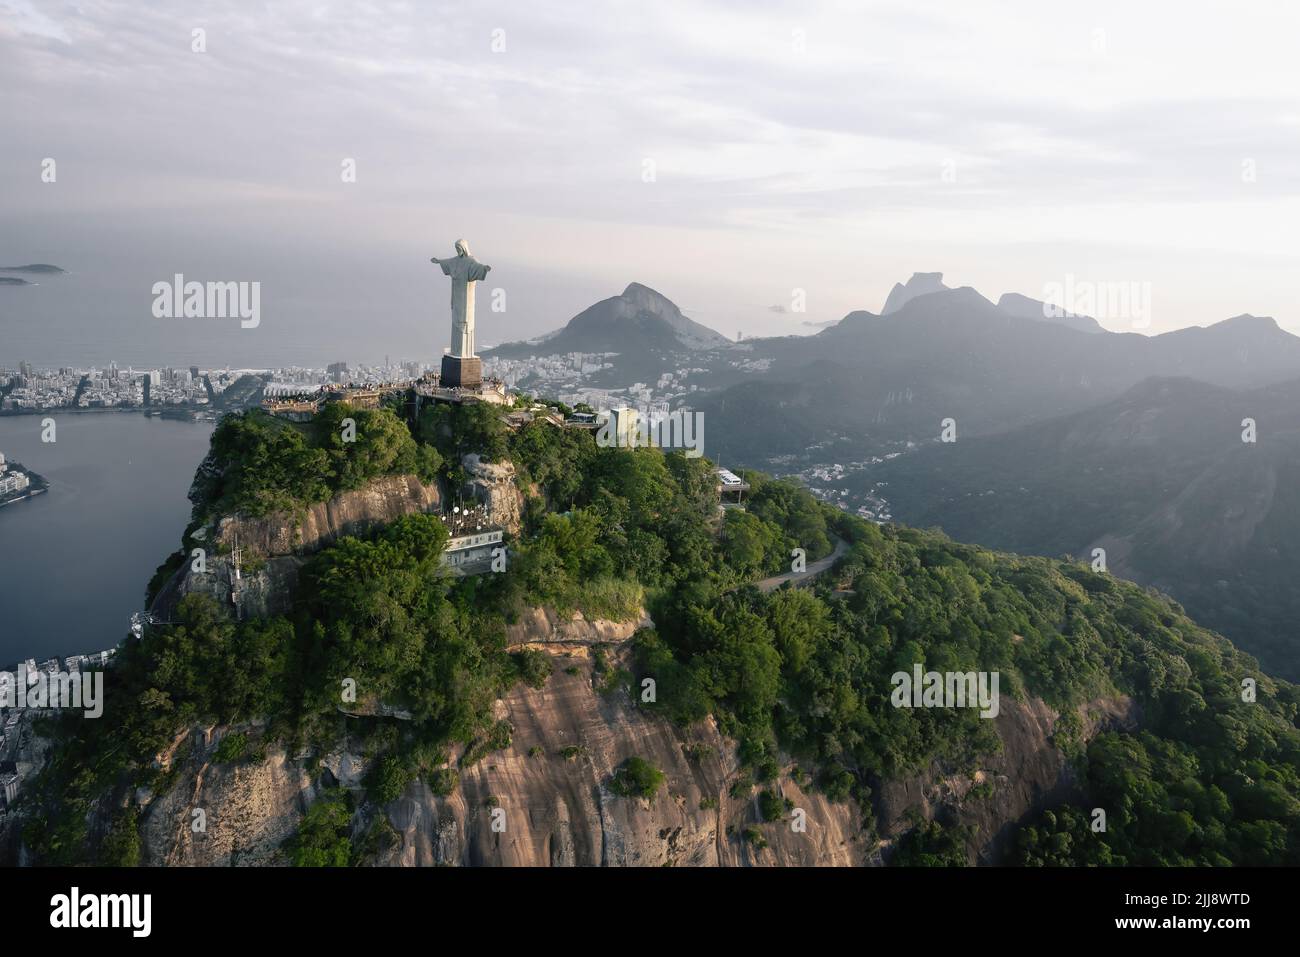 Vue aérienne de la statue du Christ Rédempteur et de la montagne du Corcovado - Rio de Janeiro, Brésil Banque D'Images